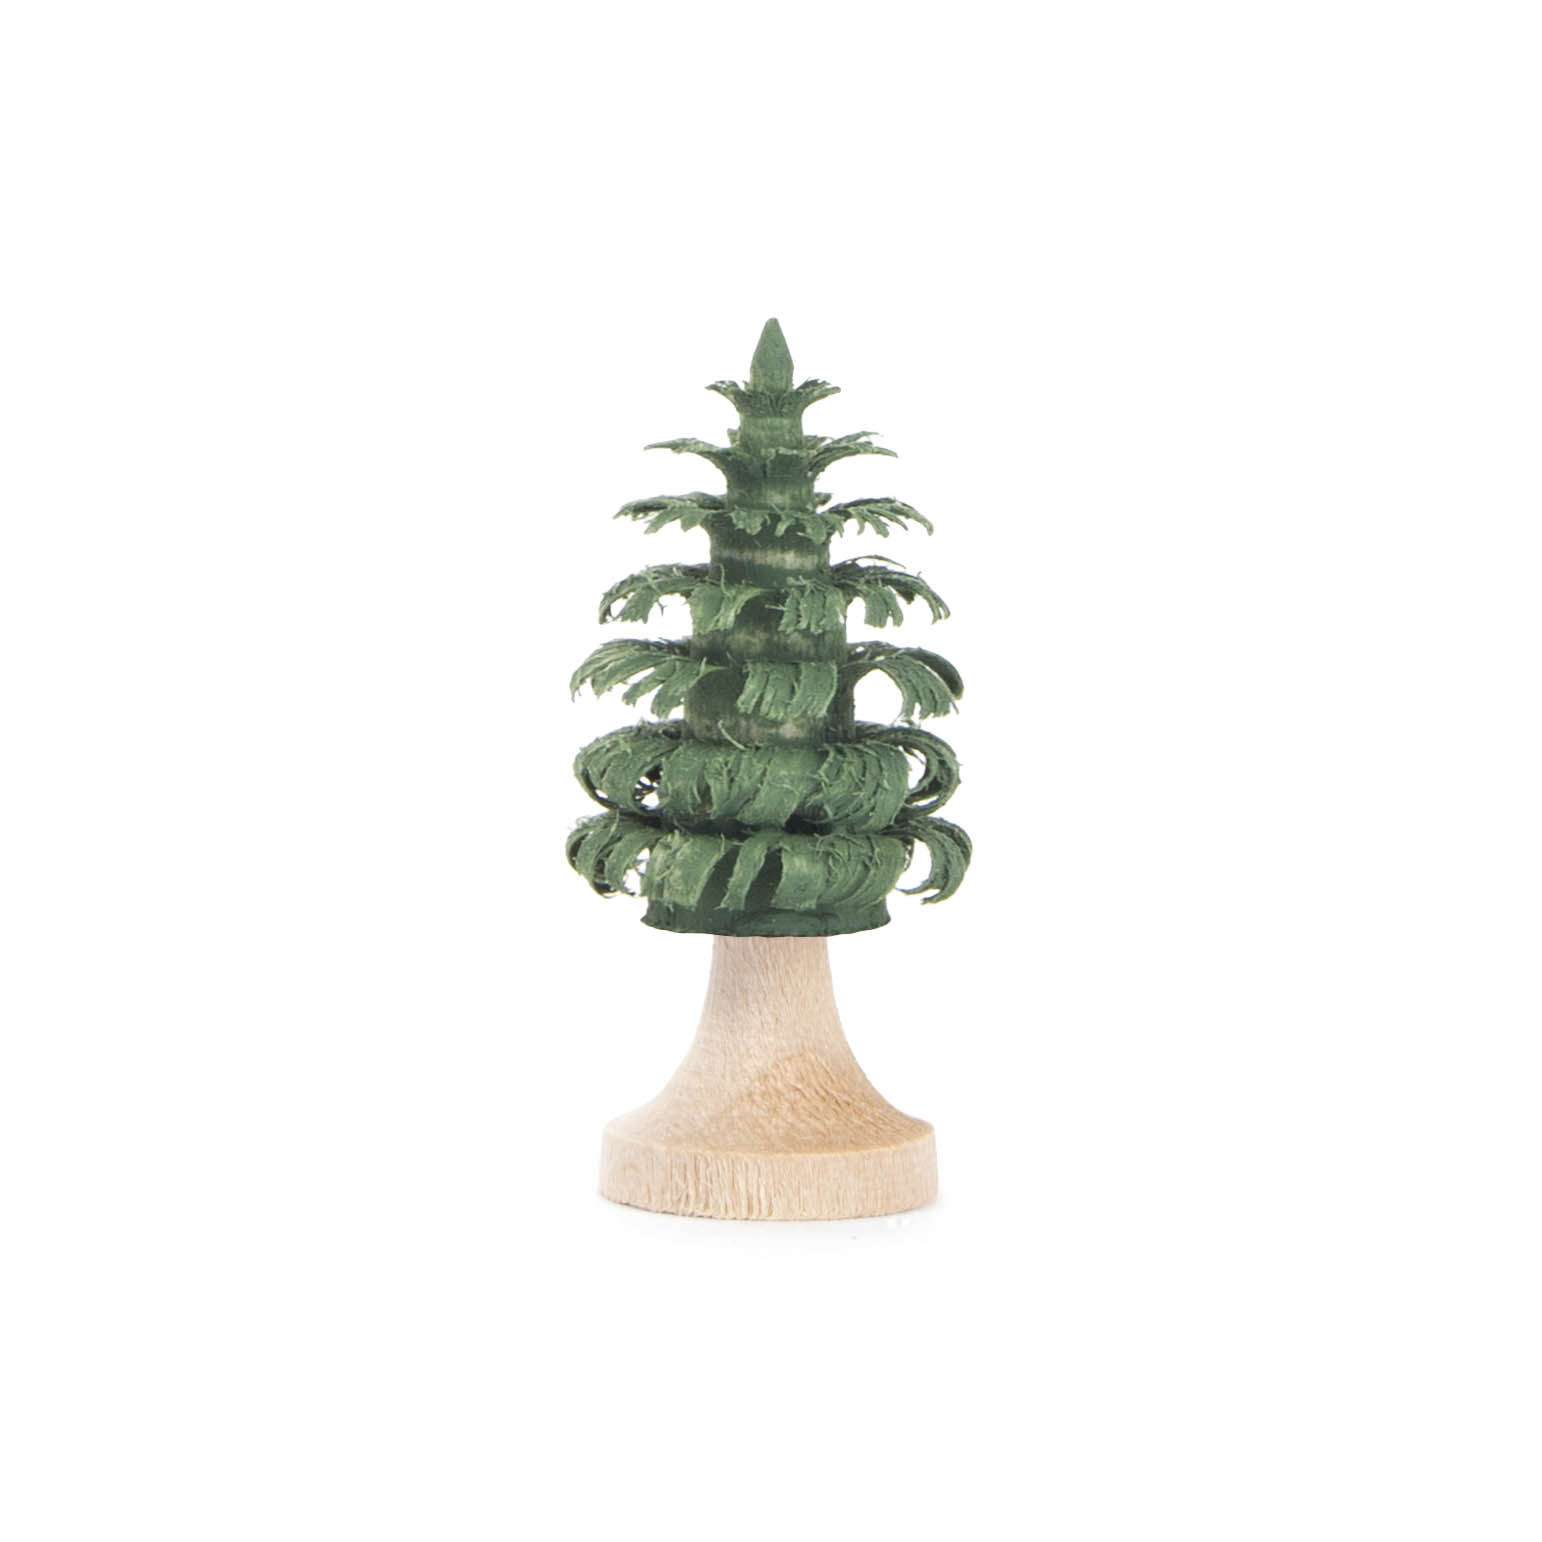 Ringelbaum 3cm mit Stamm grün